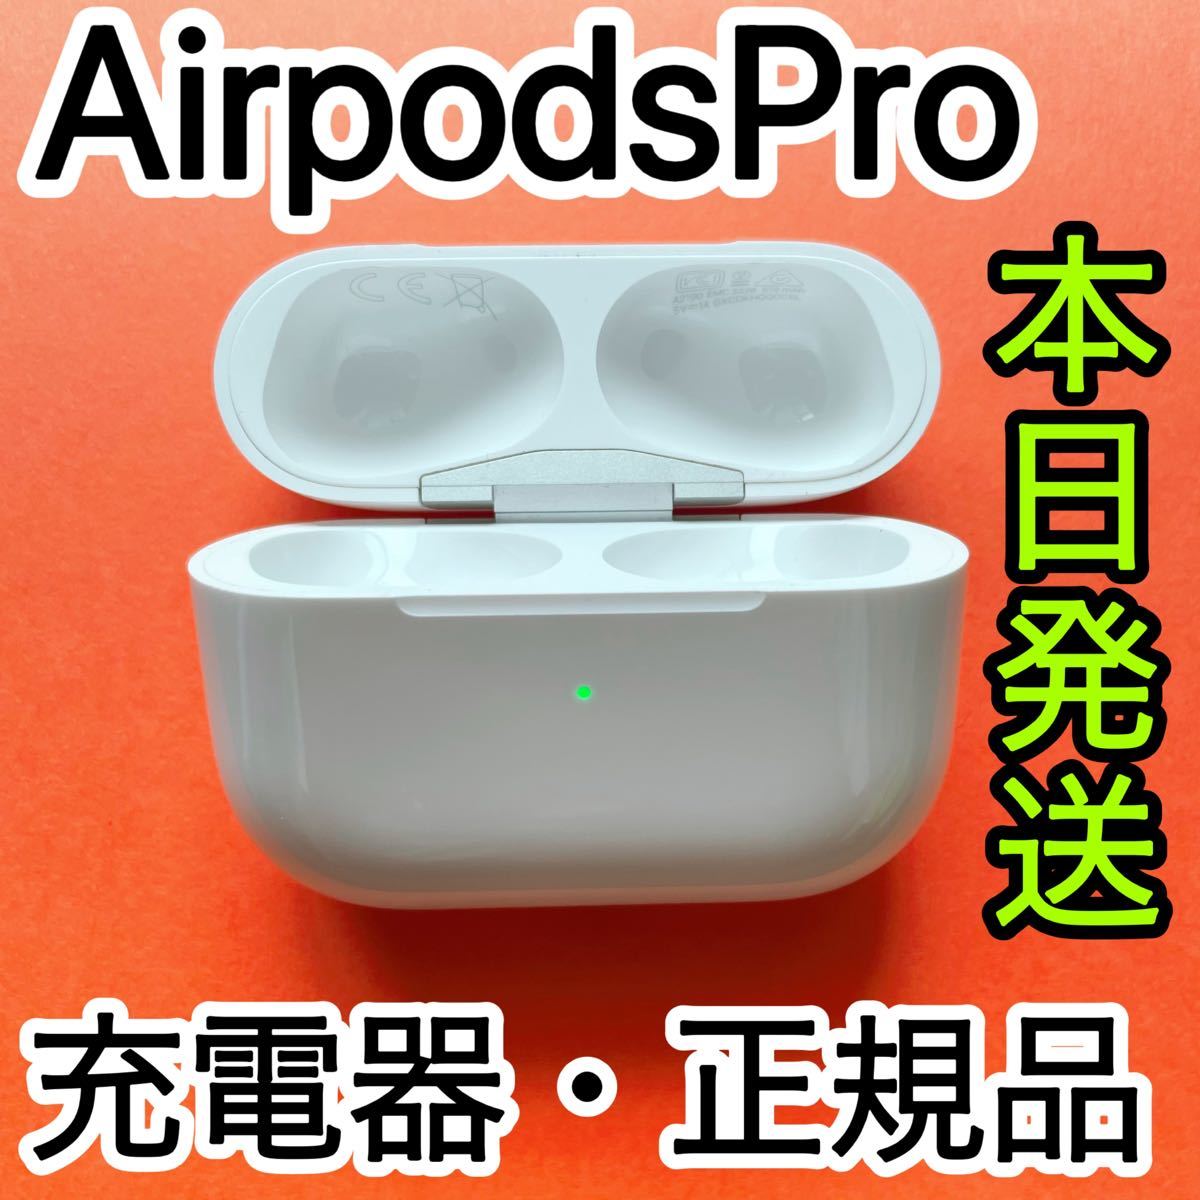 エアーポッズプロ 充電ケース 充電器 Apple国内正規品 AirPodsPro